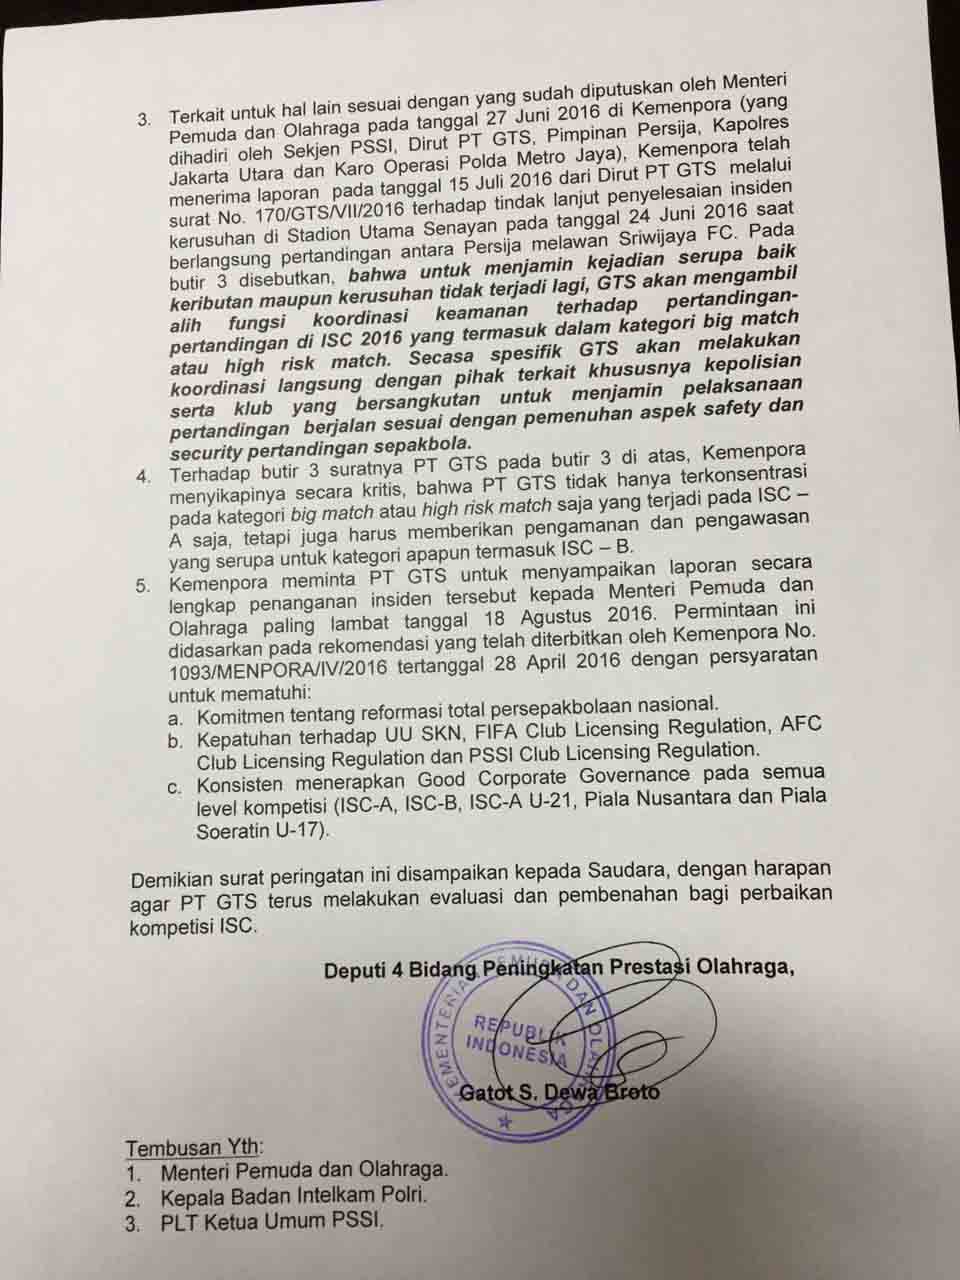 Surat peringatan dari pemerintah untuk PT GTS selaku operator kompetisi. Foto: Mahmud Alexander untuk Rappler.com